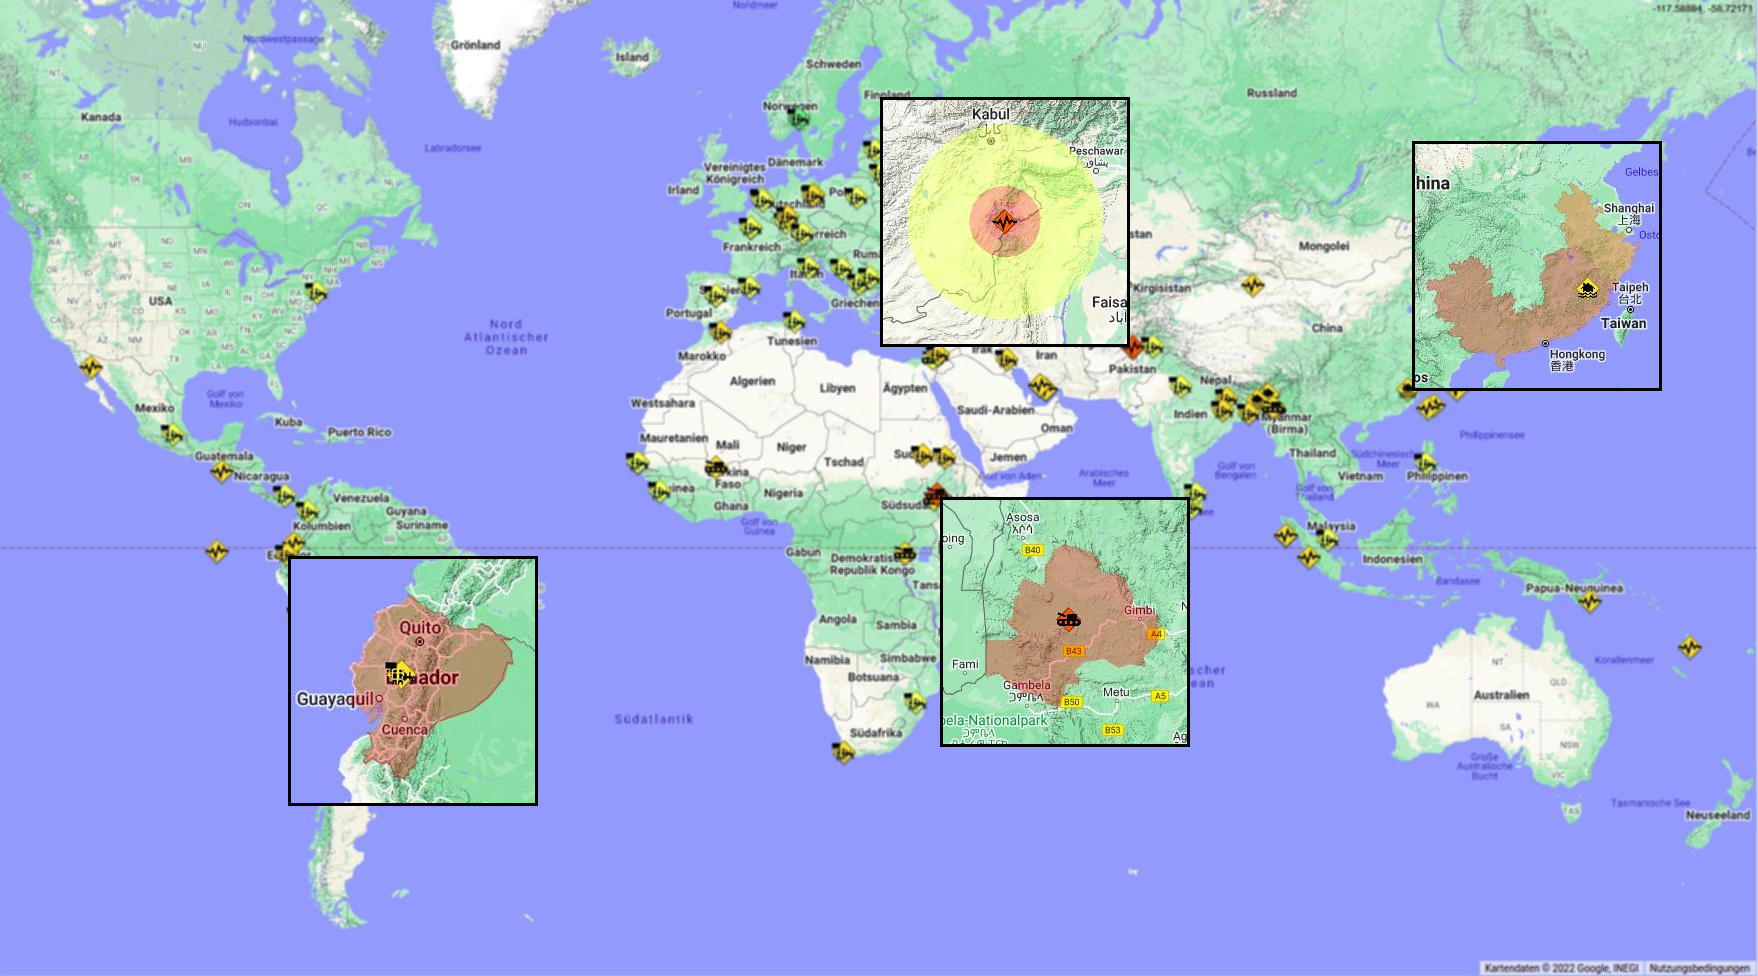 Weltkarte mit lokalisierten Ereignissen